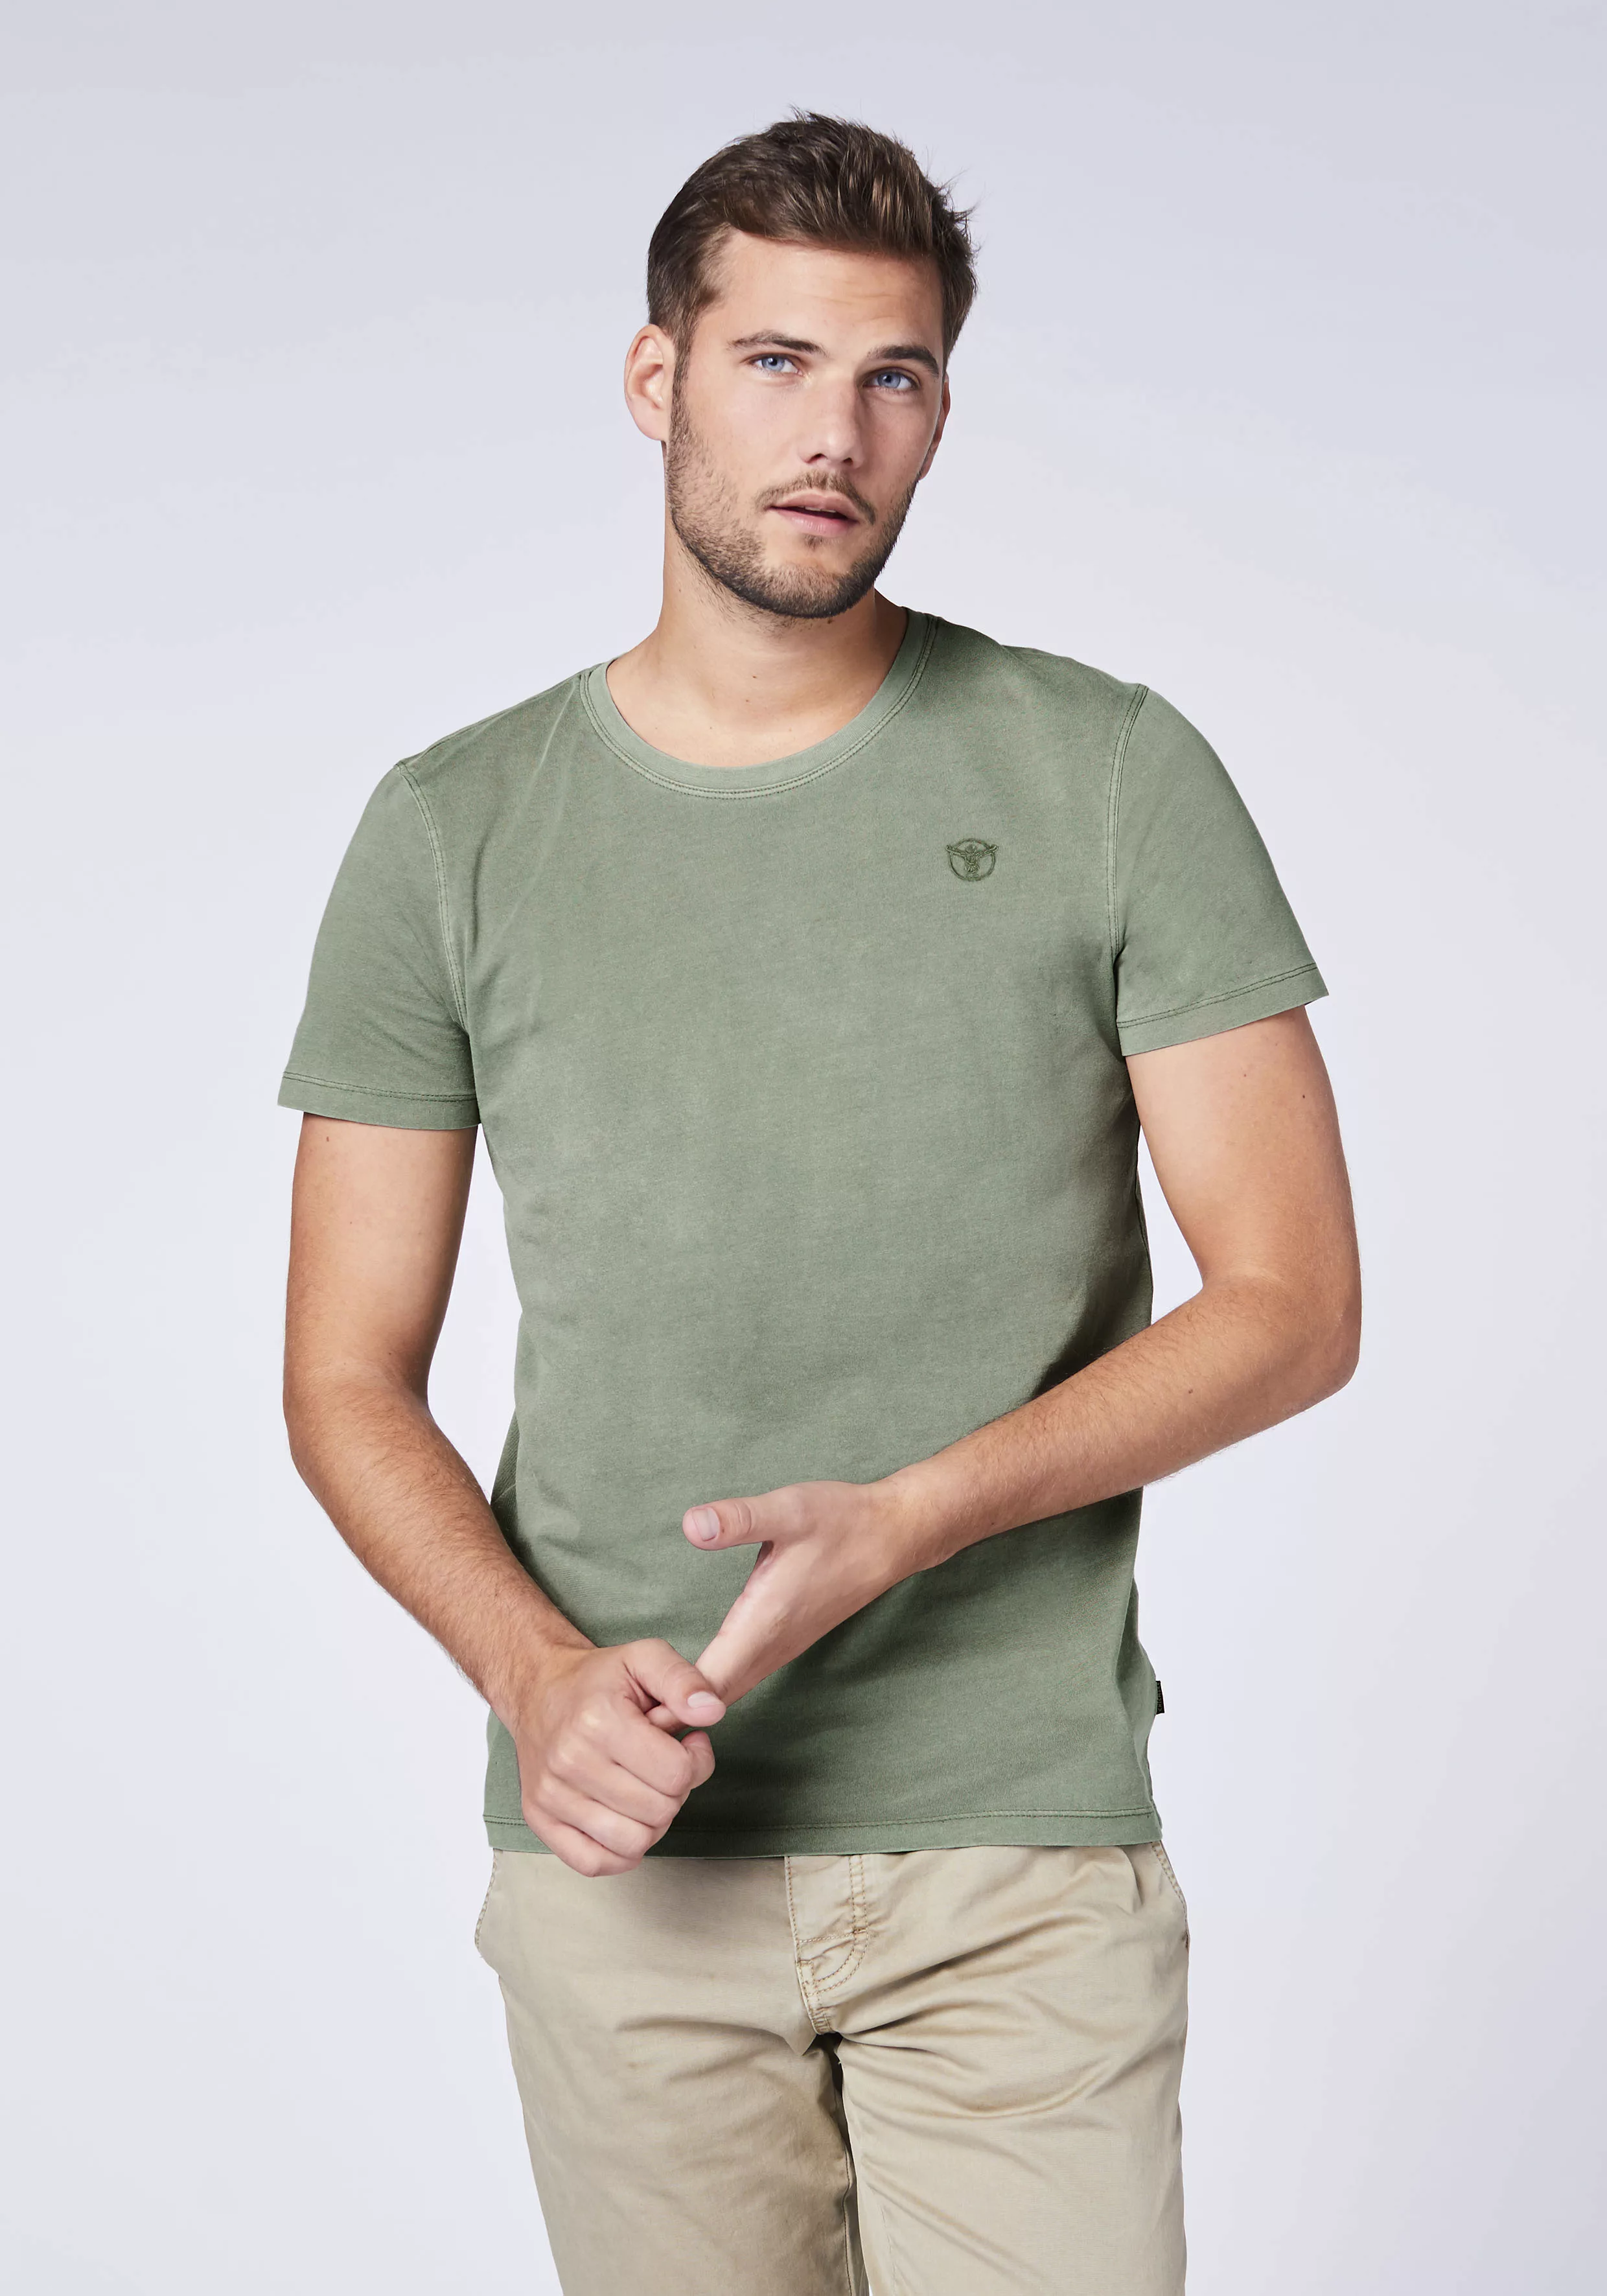 Chiemsee T-Shirt in großen Größen günstig online kaufen